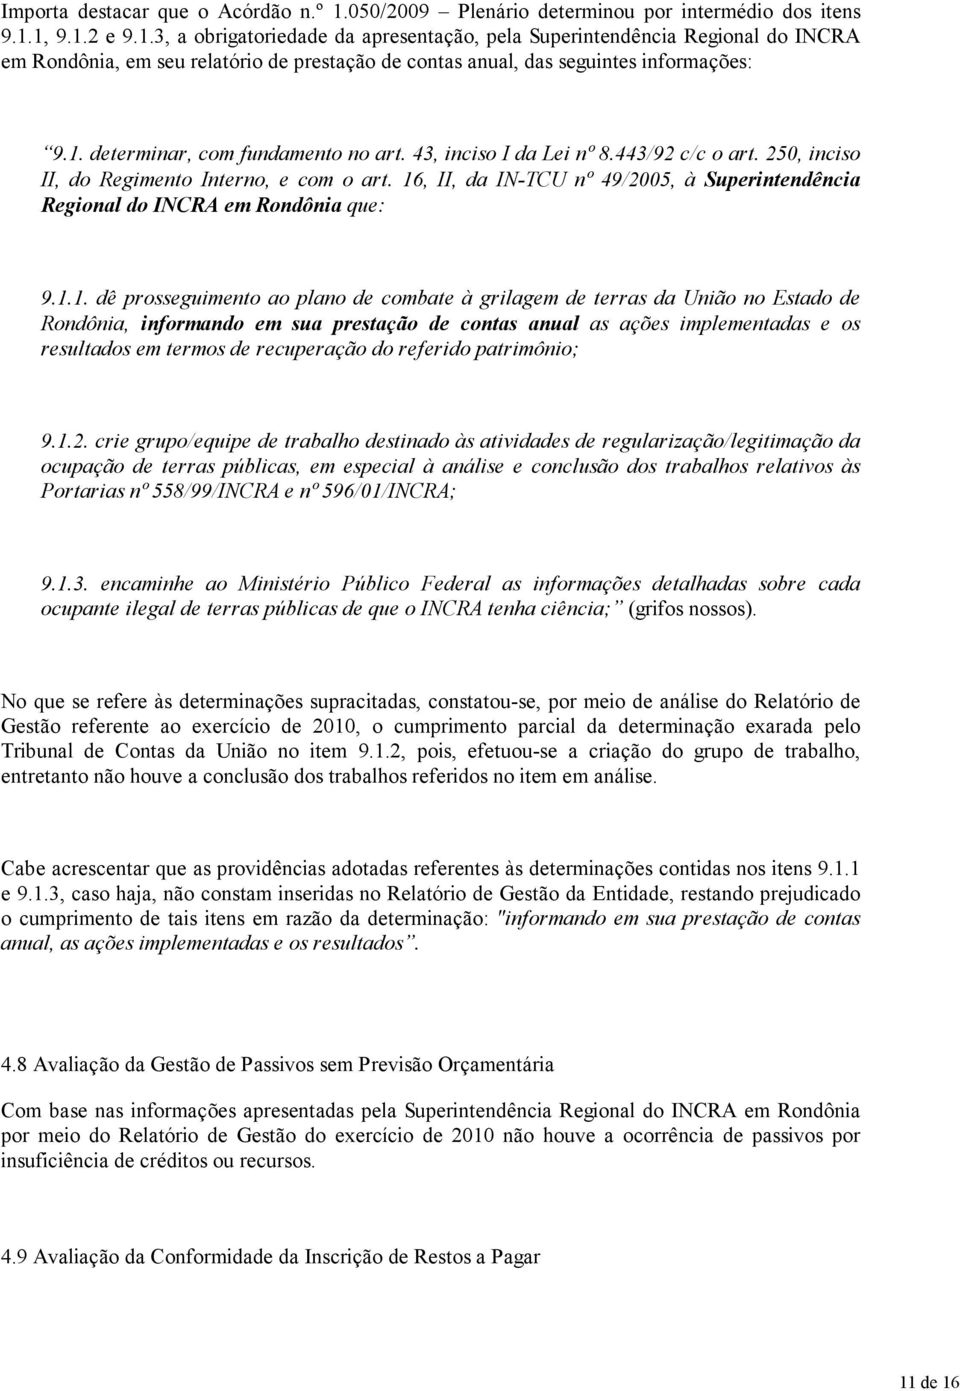 16, II, da IN-TCU nº 49/2005, à Superintendência Regional do INCRA em Rondônia que: 9.1.1. dê prosseguimento ao plano de combate à grilagem de terras da União no Estado de Rondônia, informando em sua